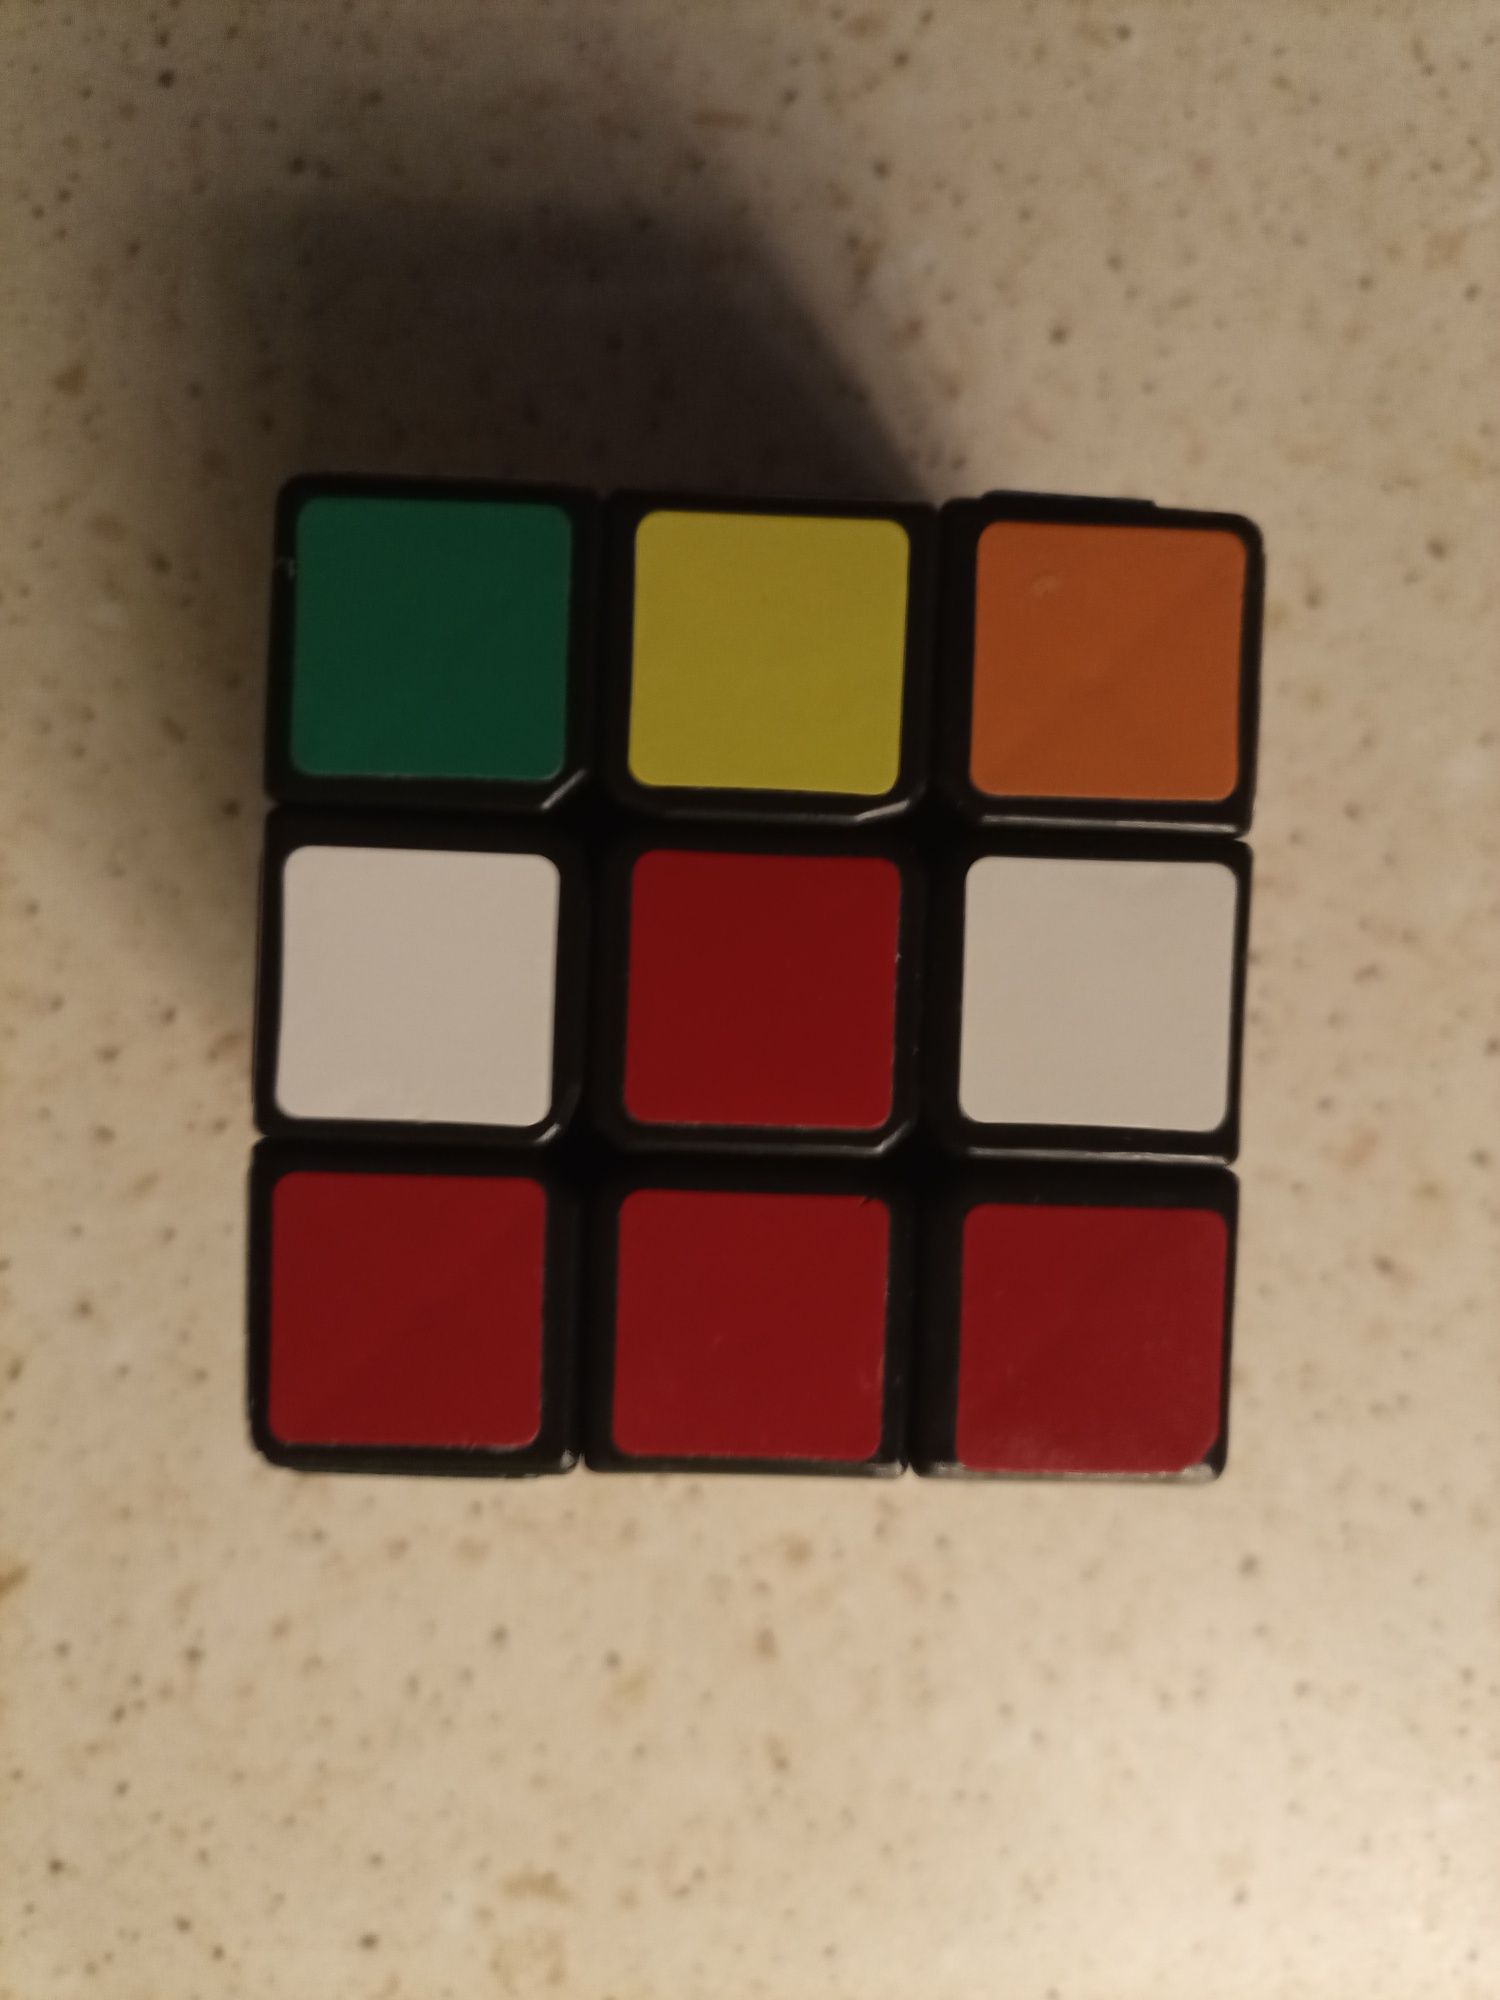 Kostka zręcznościowa Rubika Da Yan 3 x 3.